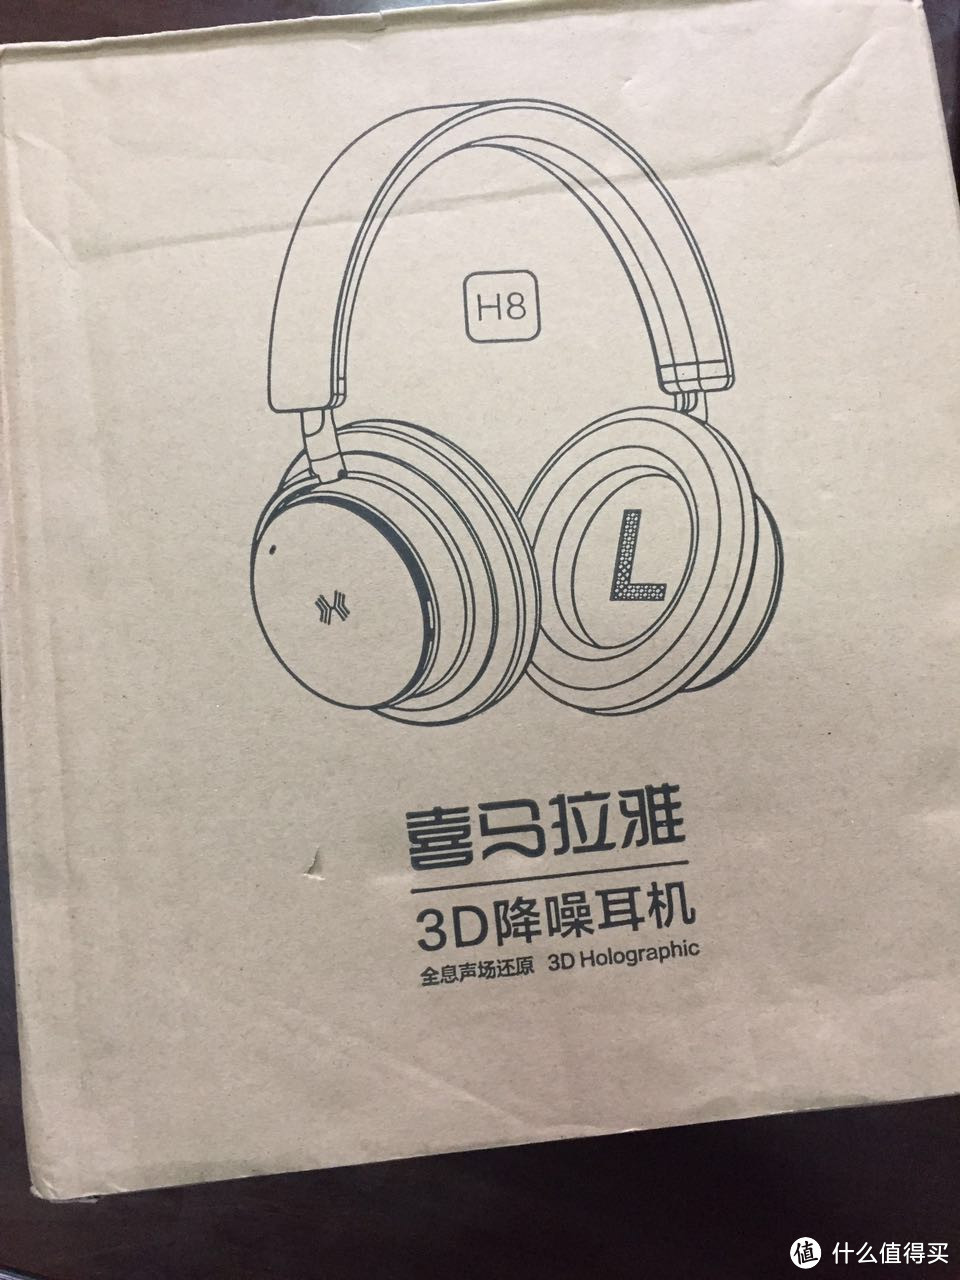 #中奖秀#张大妈的国庆礼物——喜马拉雅 H8 3D 耳机 开箱